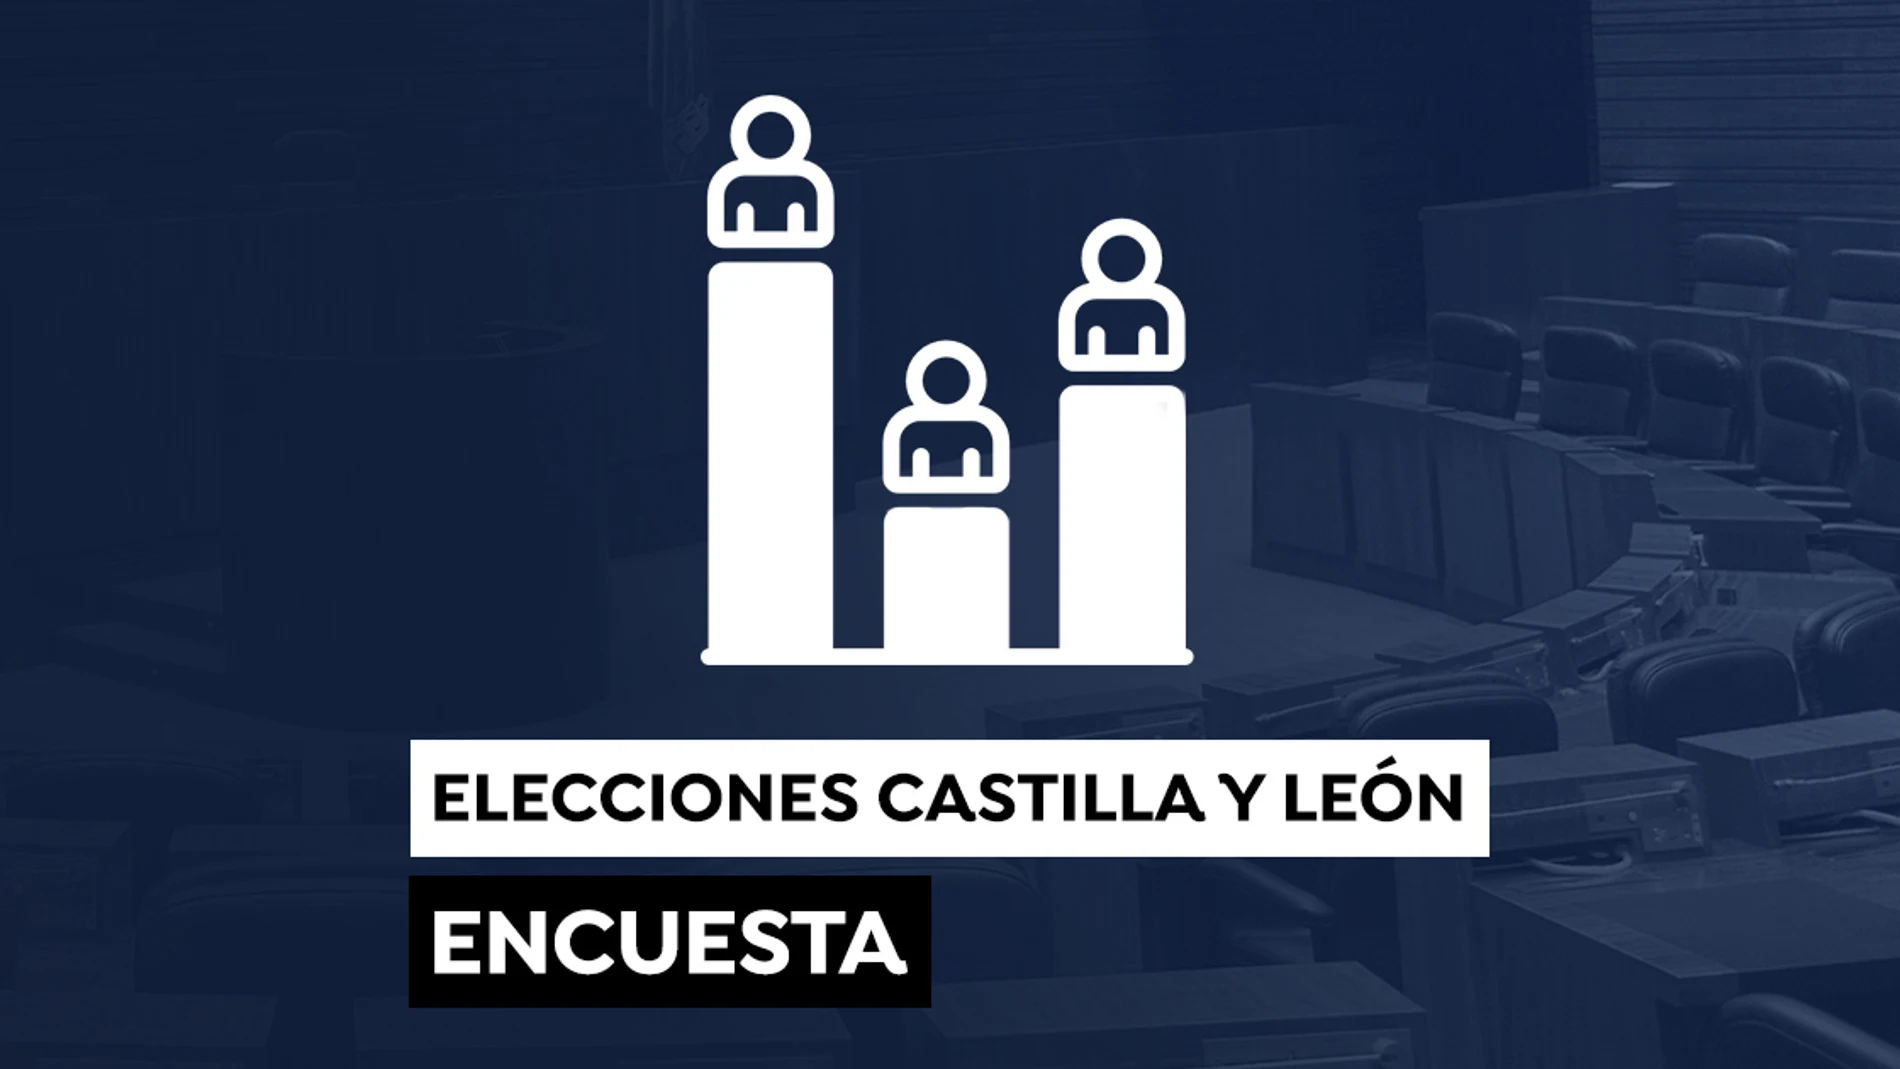 Los sondeos a pie de urna pronostican una victoria ajustada para el PP en las elecciones de Castilla y León 2022